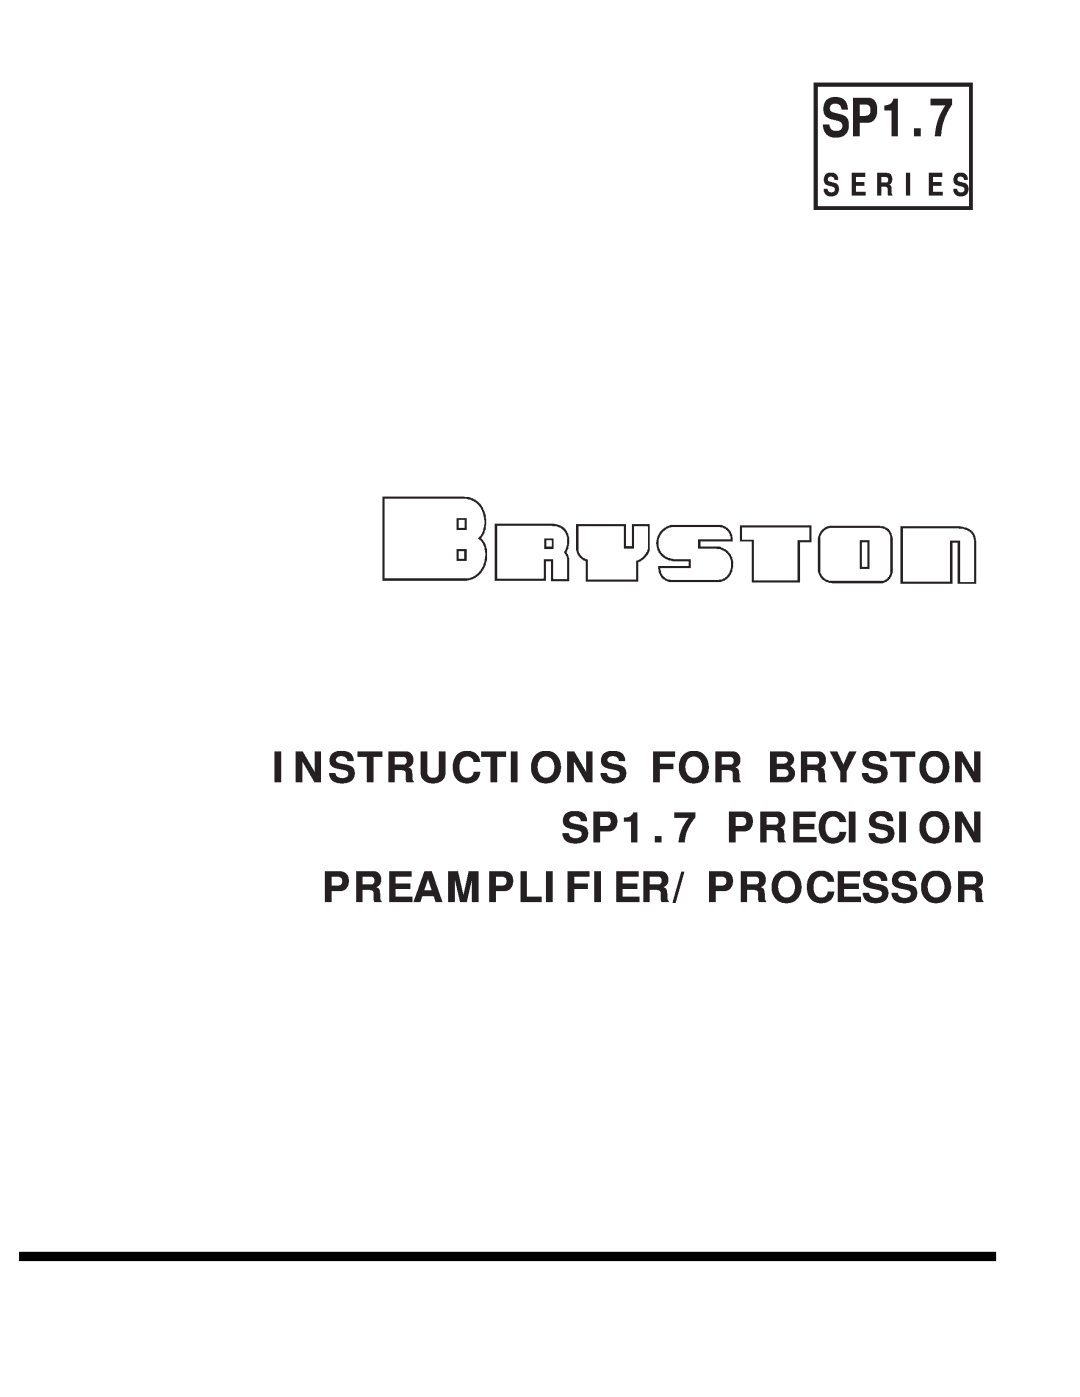 Bryston SP1.7PRECISION manual S E R I E S 